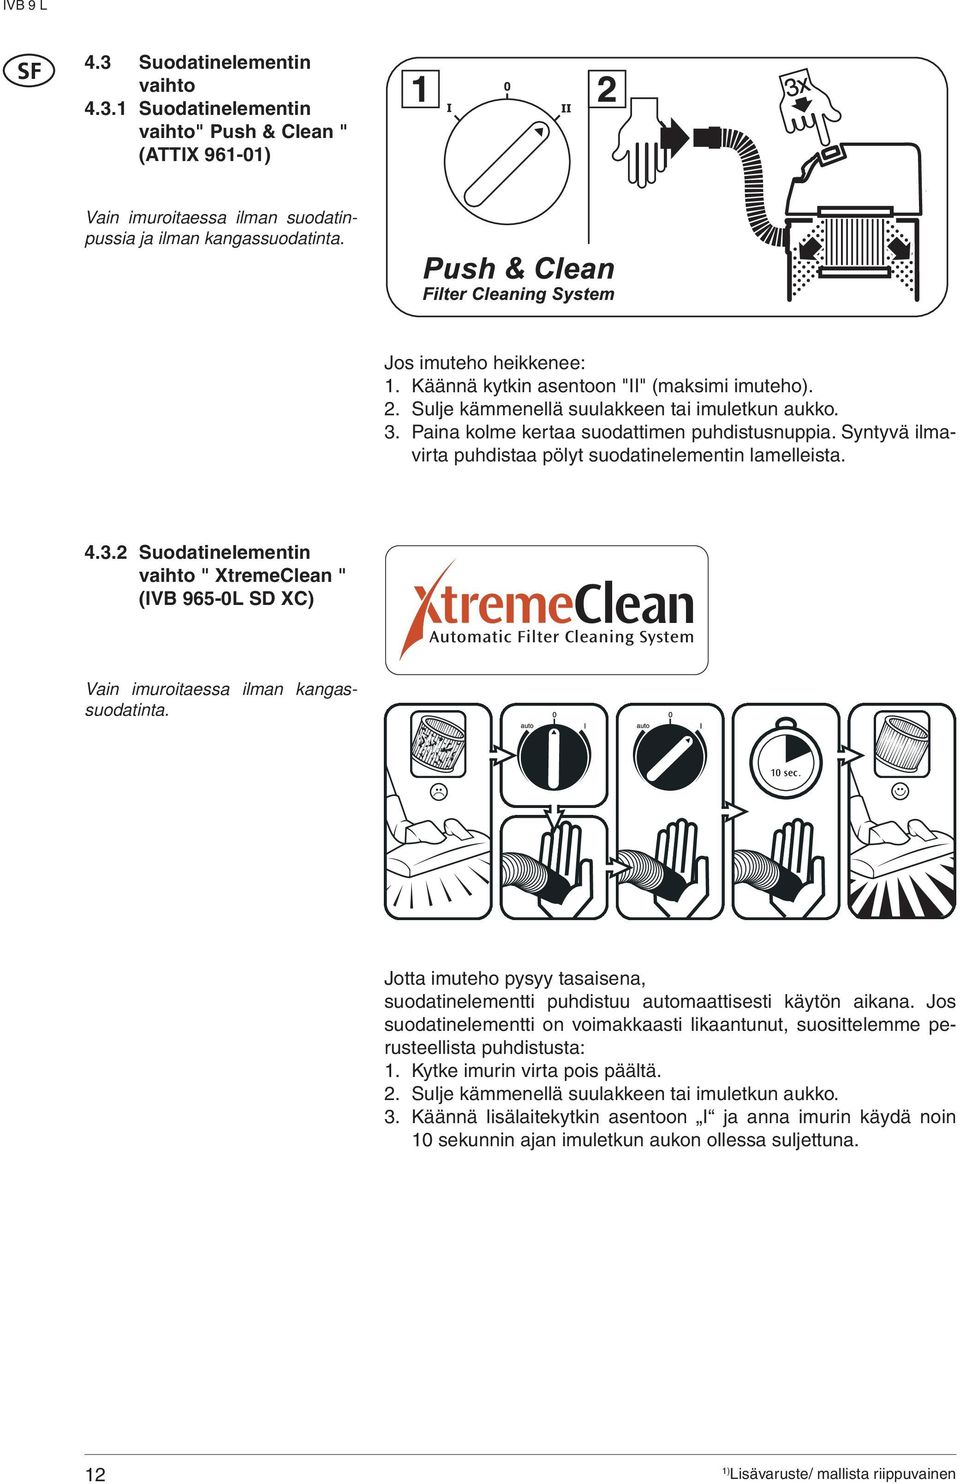 Syntyvä ilmavirta puhdistaa pölyt suodatinelementin lamelleista. 4.3.2 Suodatinelementin vaihto " XtremeClean " (IV 965-0L SD XC) Vain imuroitaessa ilman kangassuodatinta. 10 sec.